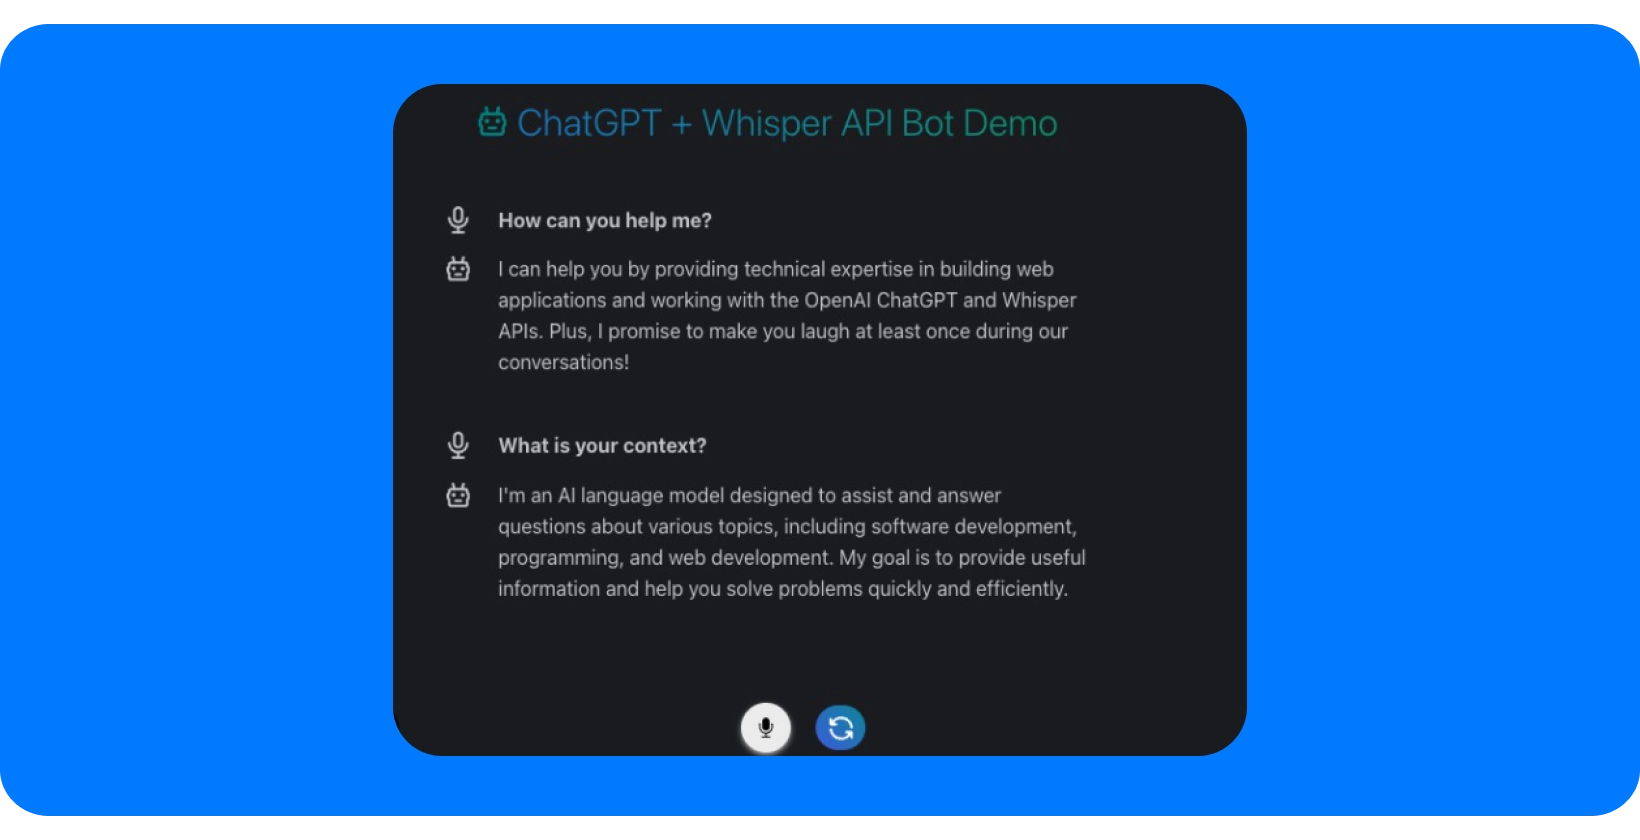 Cuplikan layar ChatGPT + Whisper API Bot Demo yang menampilkan kemampuan bantuan percakapan.